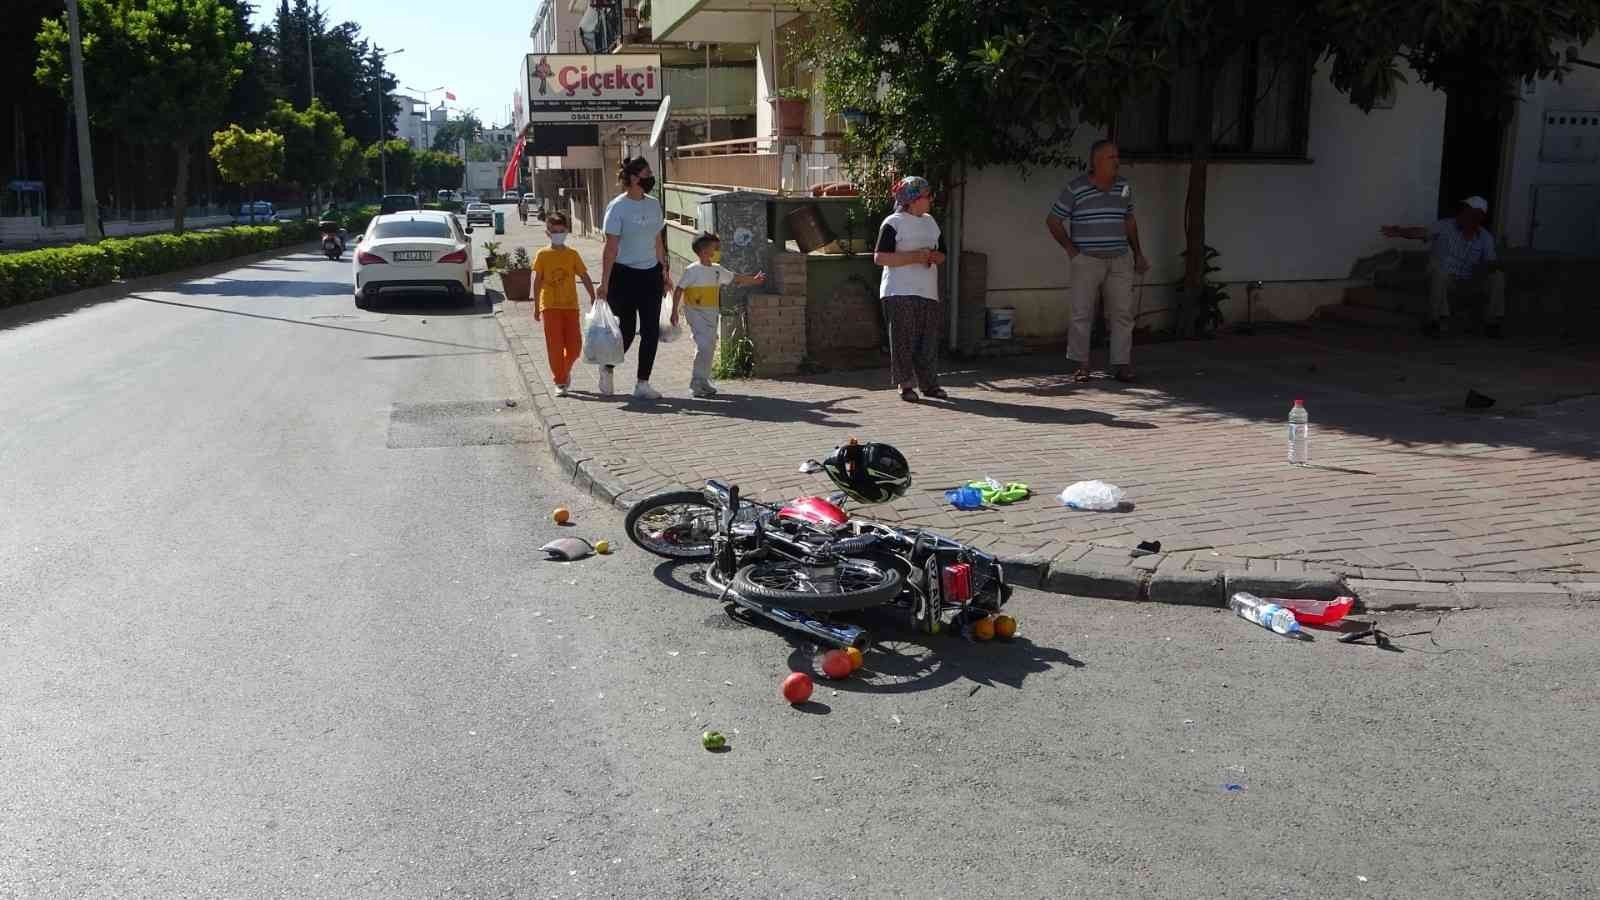 Cipin çarptığı motosiklet sürücüsü metrelerce sürüklendi #antalya